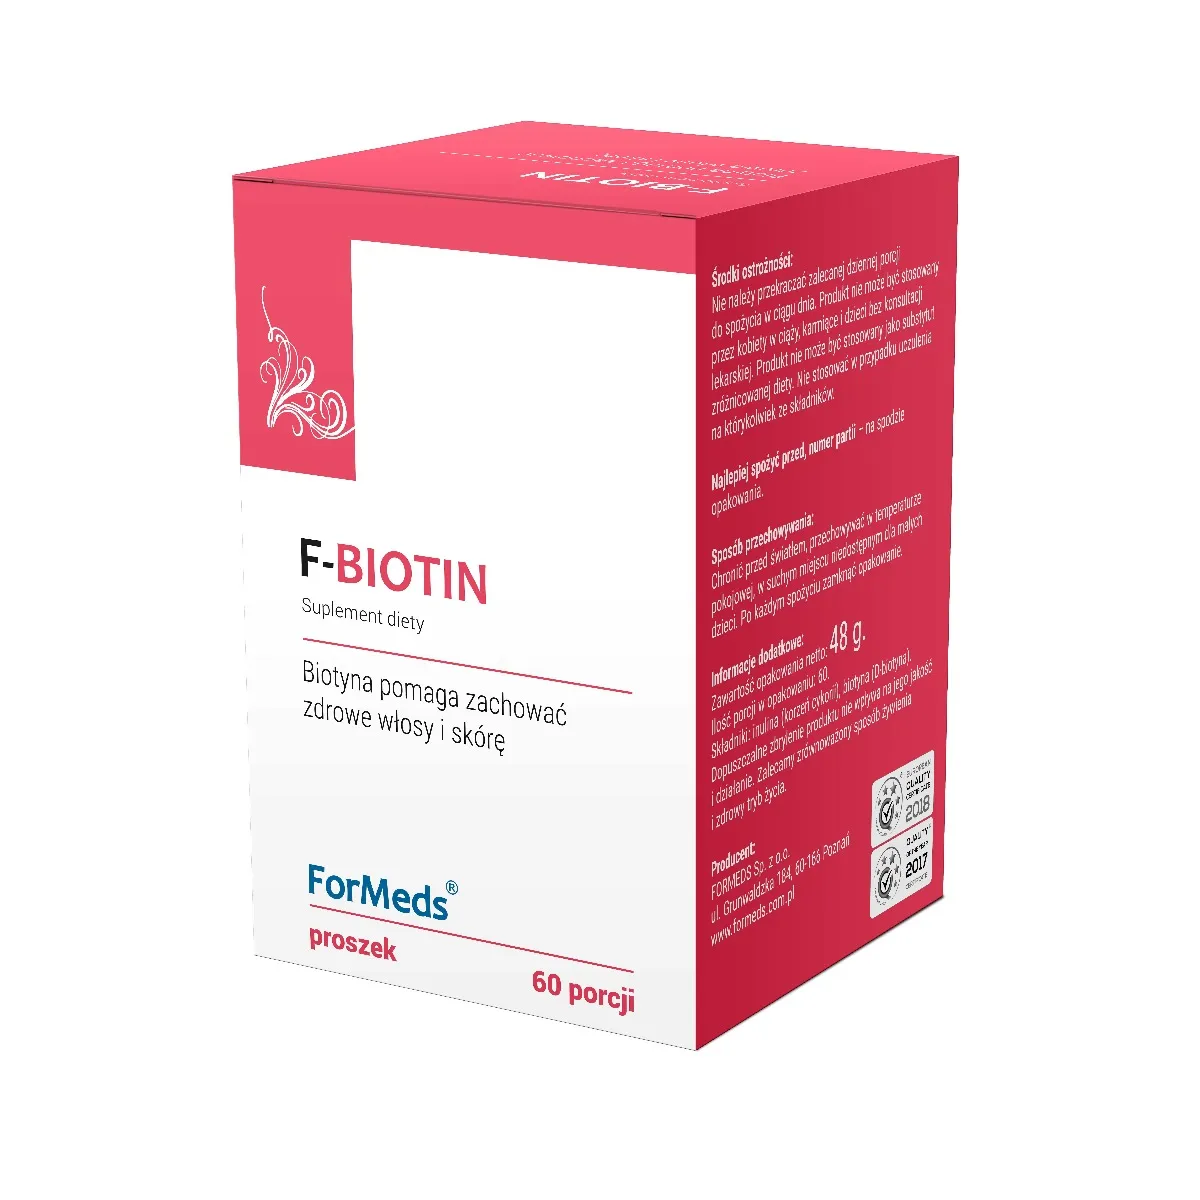 ForMeds F-Biotin, suplement diety, proszek, 60 porcji. Data ważności 2022-05-01